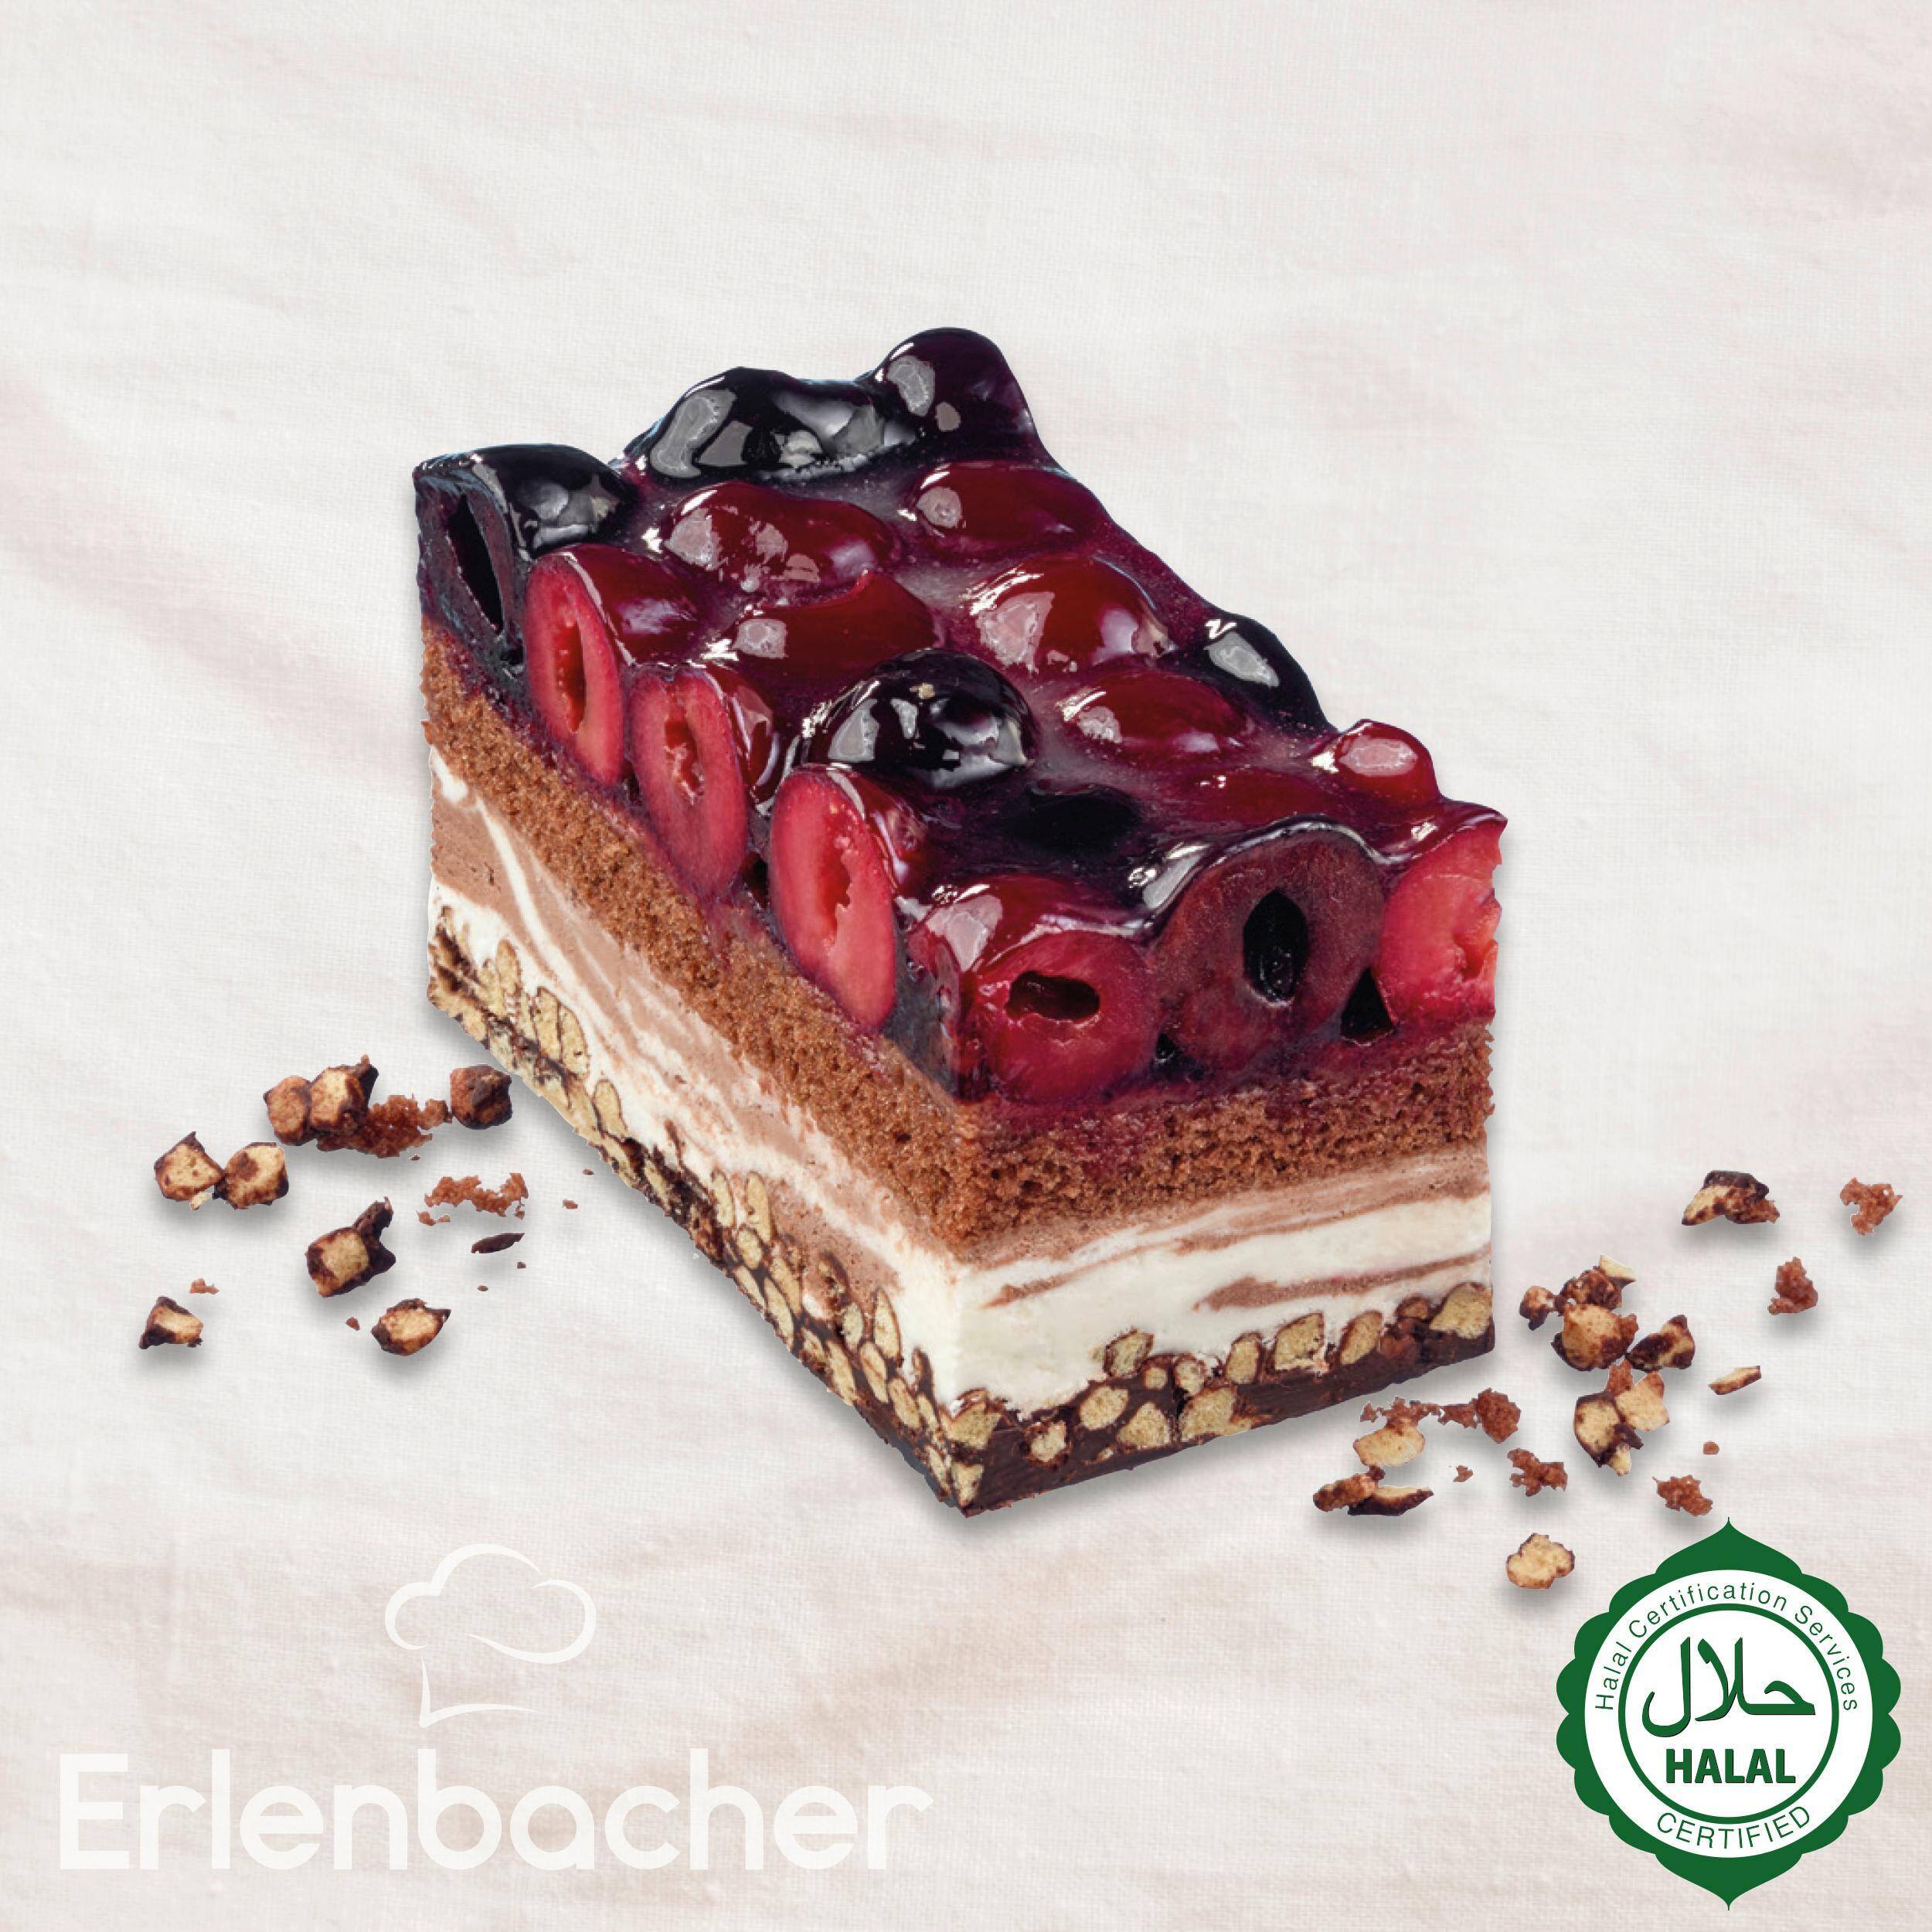 Ciasto wiśniowo-czekoladowe Crisp 2,1kg/4 Erlenbacher 39000827